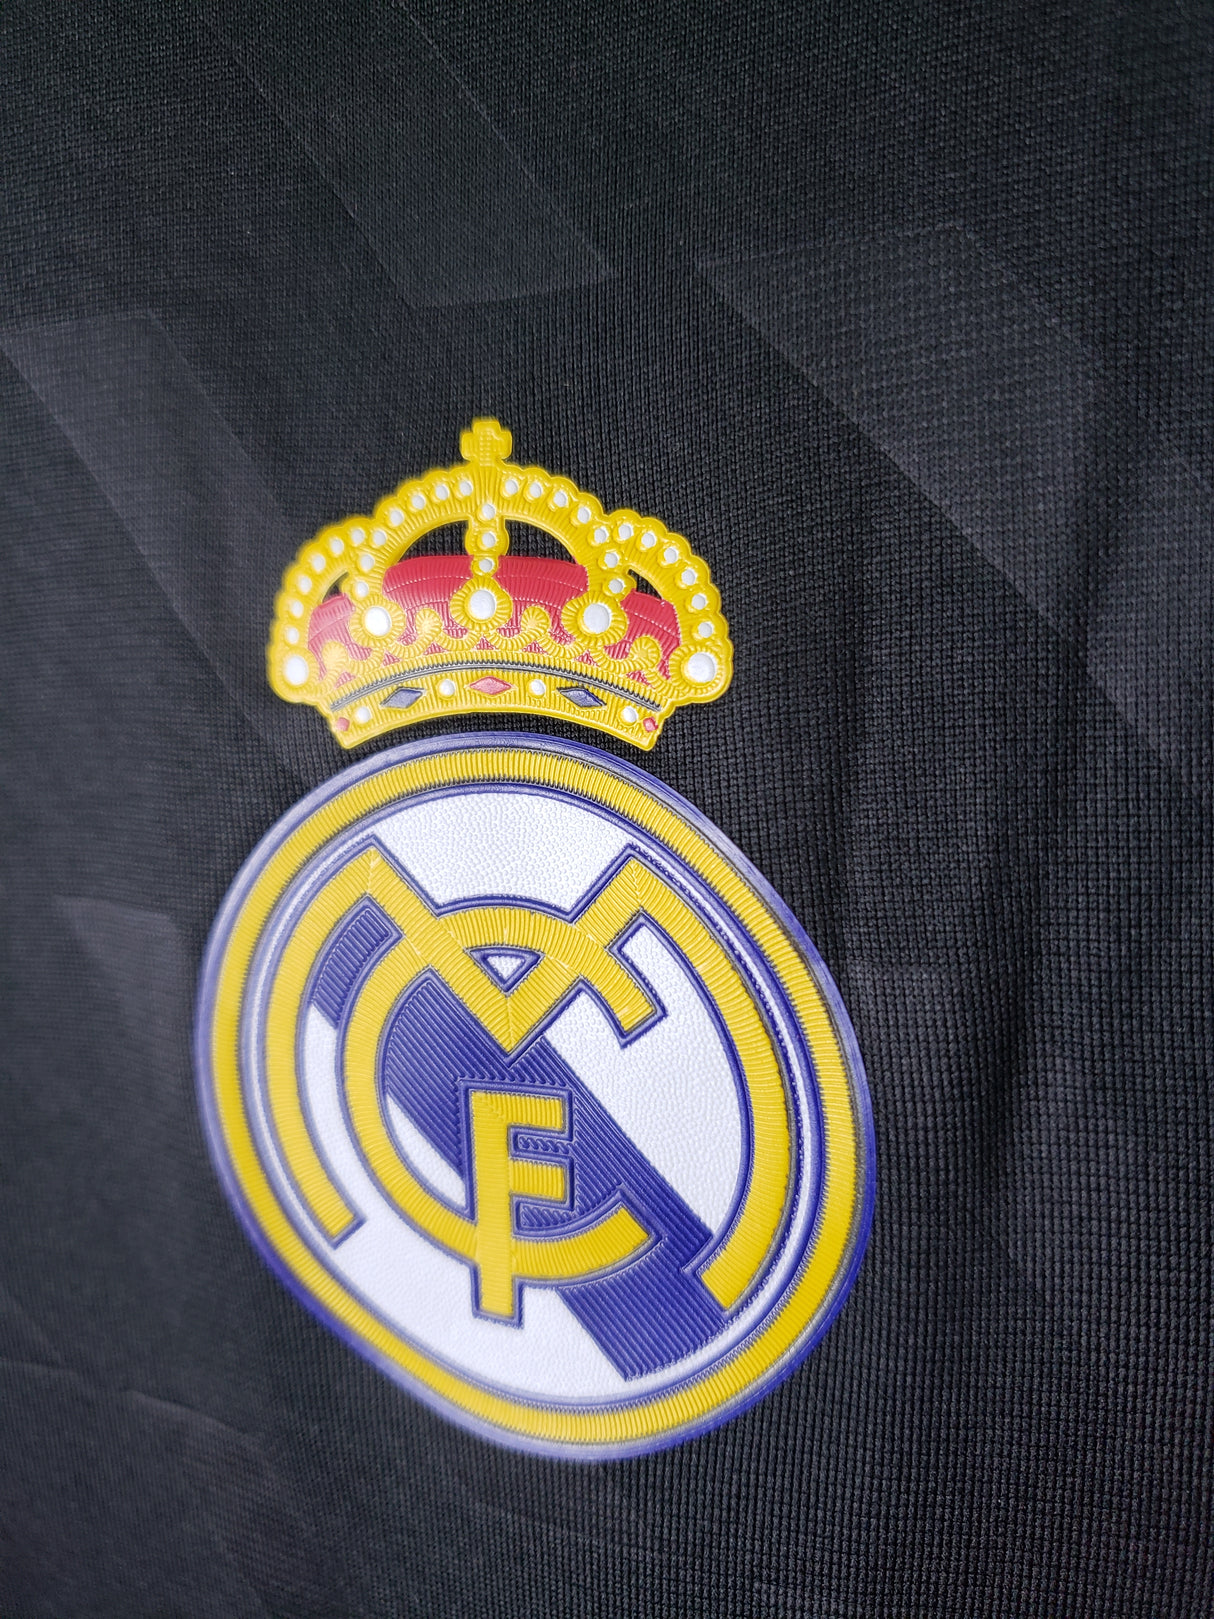 Real Madrid 2012 Black Short Sleeve